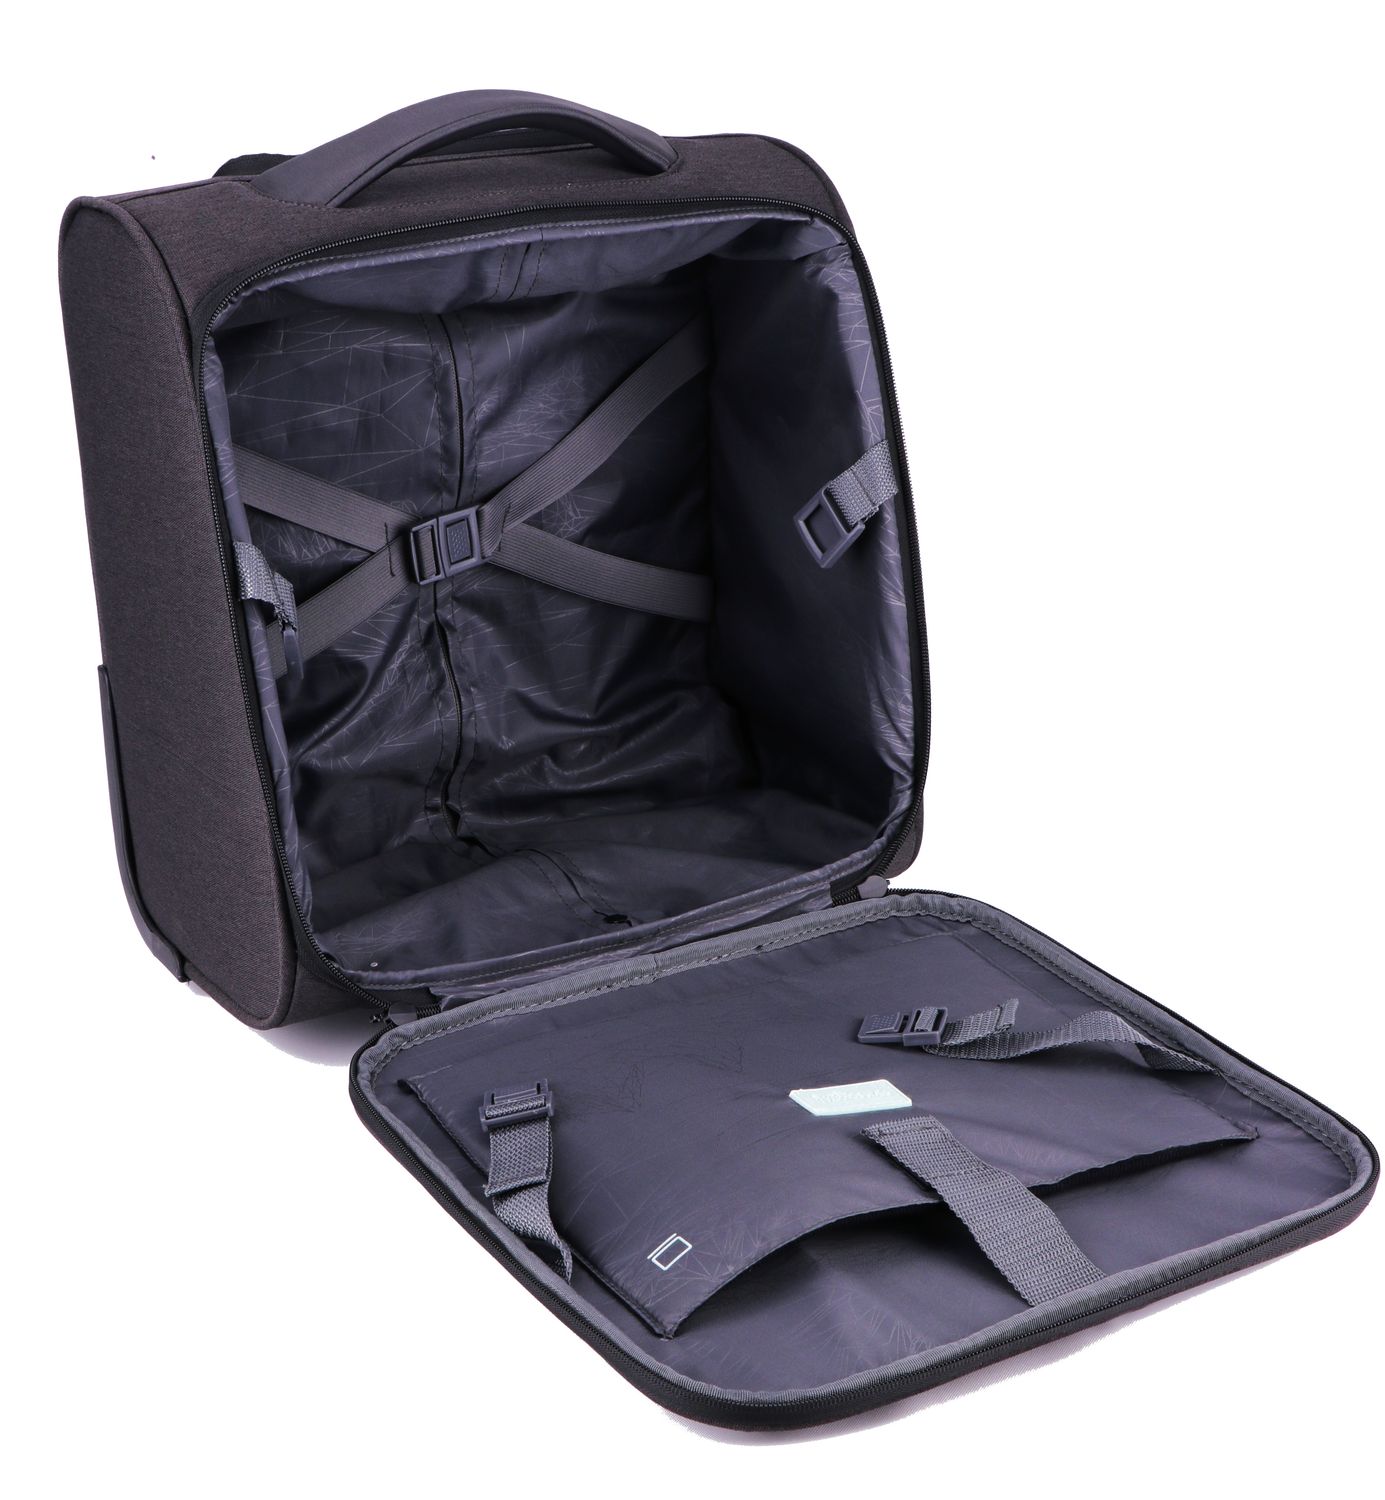 AROSA Untersitz-Tasche: Perfekt für den Flugzeugsitz!